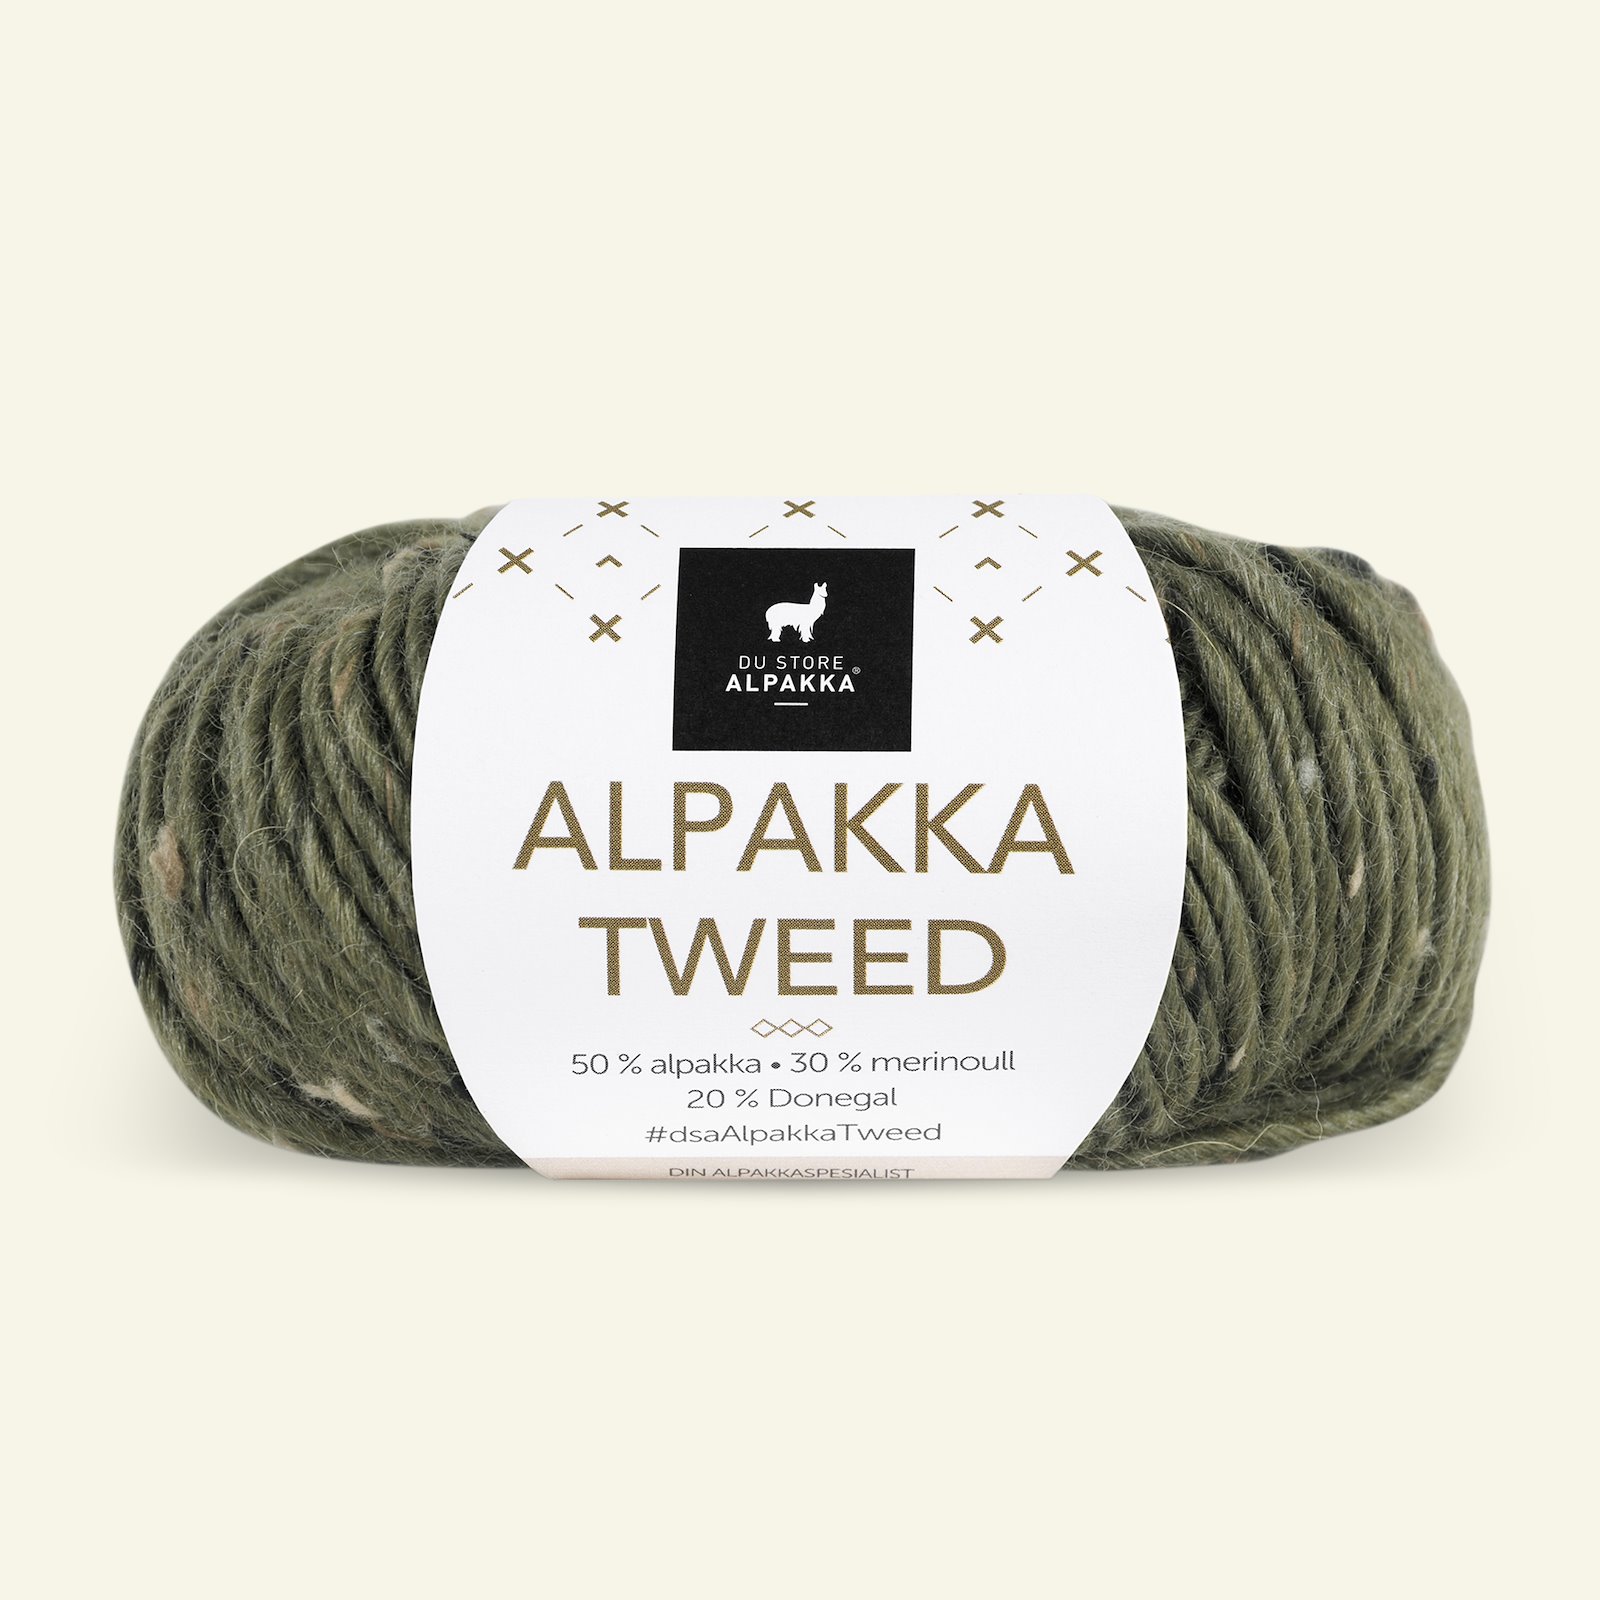 Du Store Alpakka, tweed ullgarn "Alpakka Tweed", oliven (110) 90000524_pack